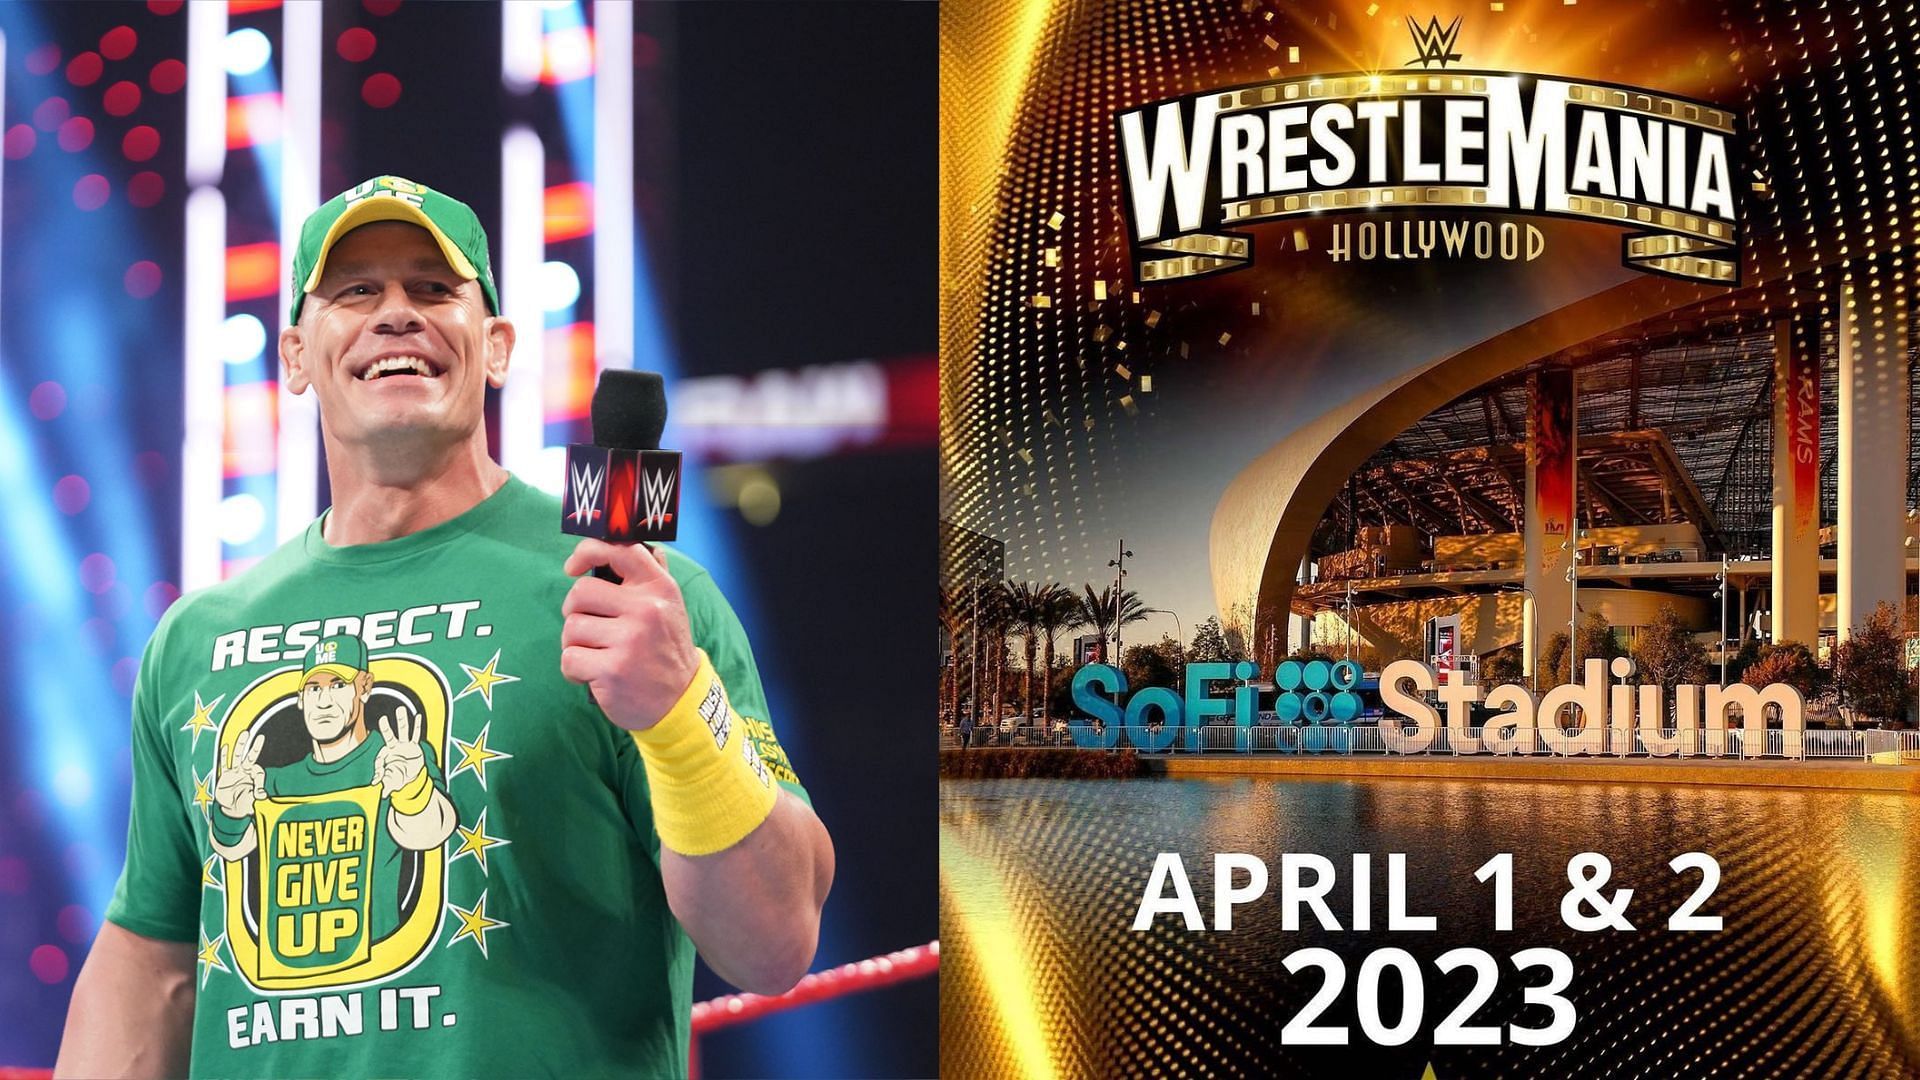 WWE Superstar John Cena is rumored to return for WrestleMania 39